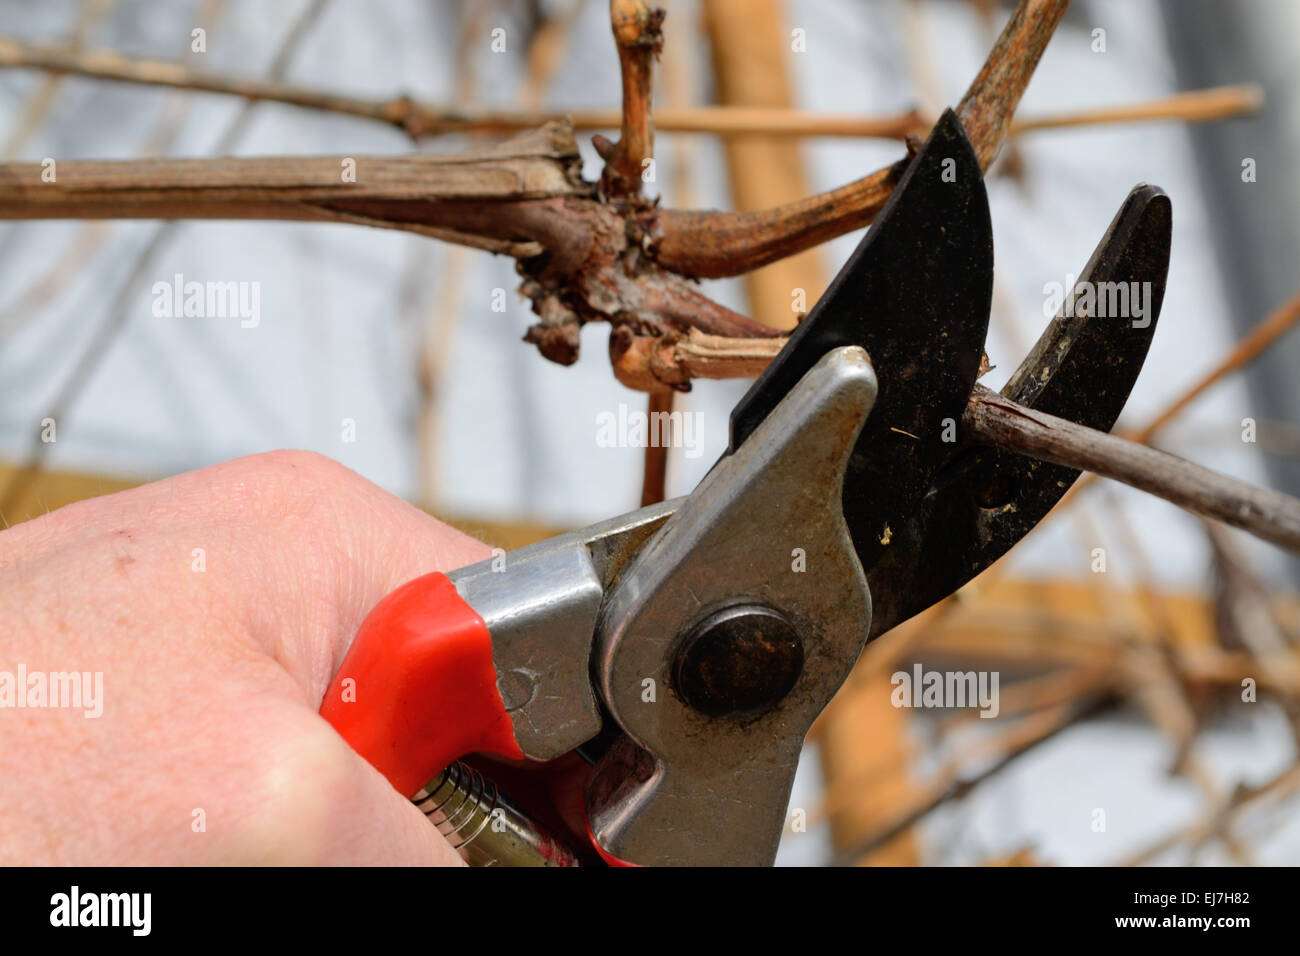 Person cuts grapevine Stock Photo